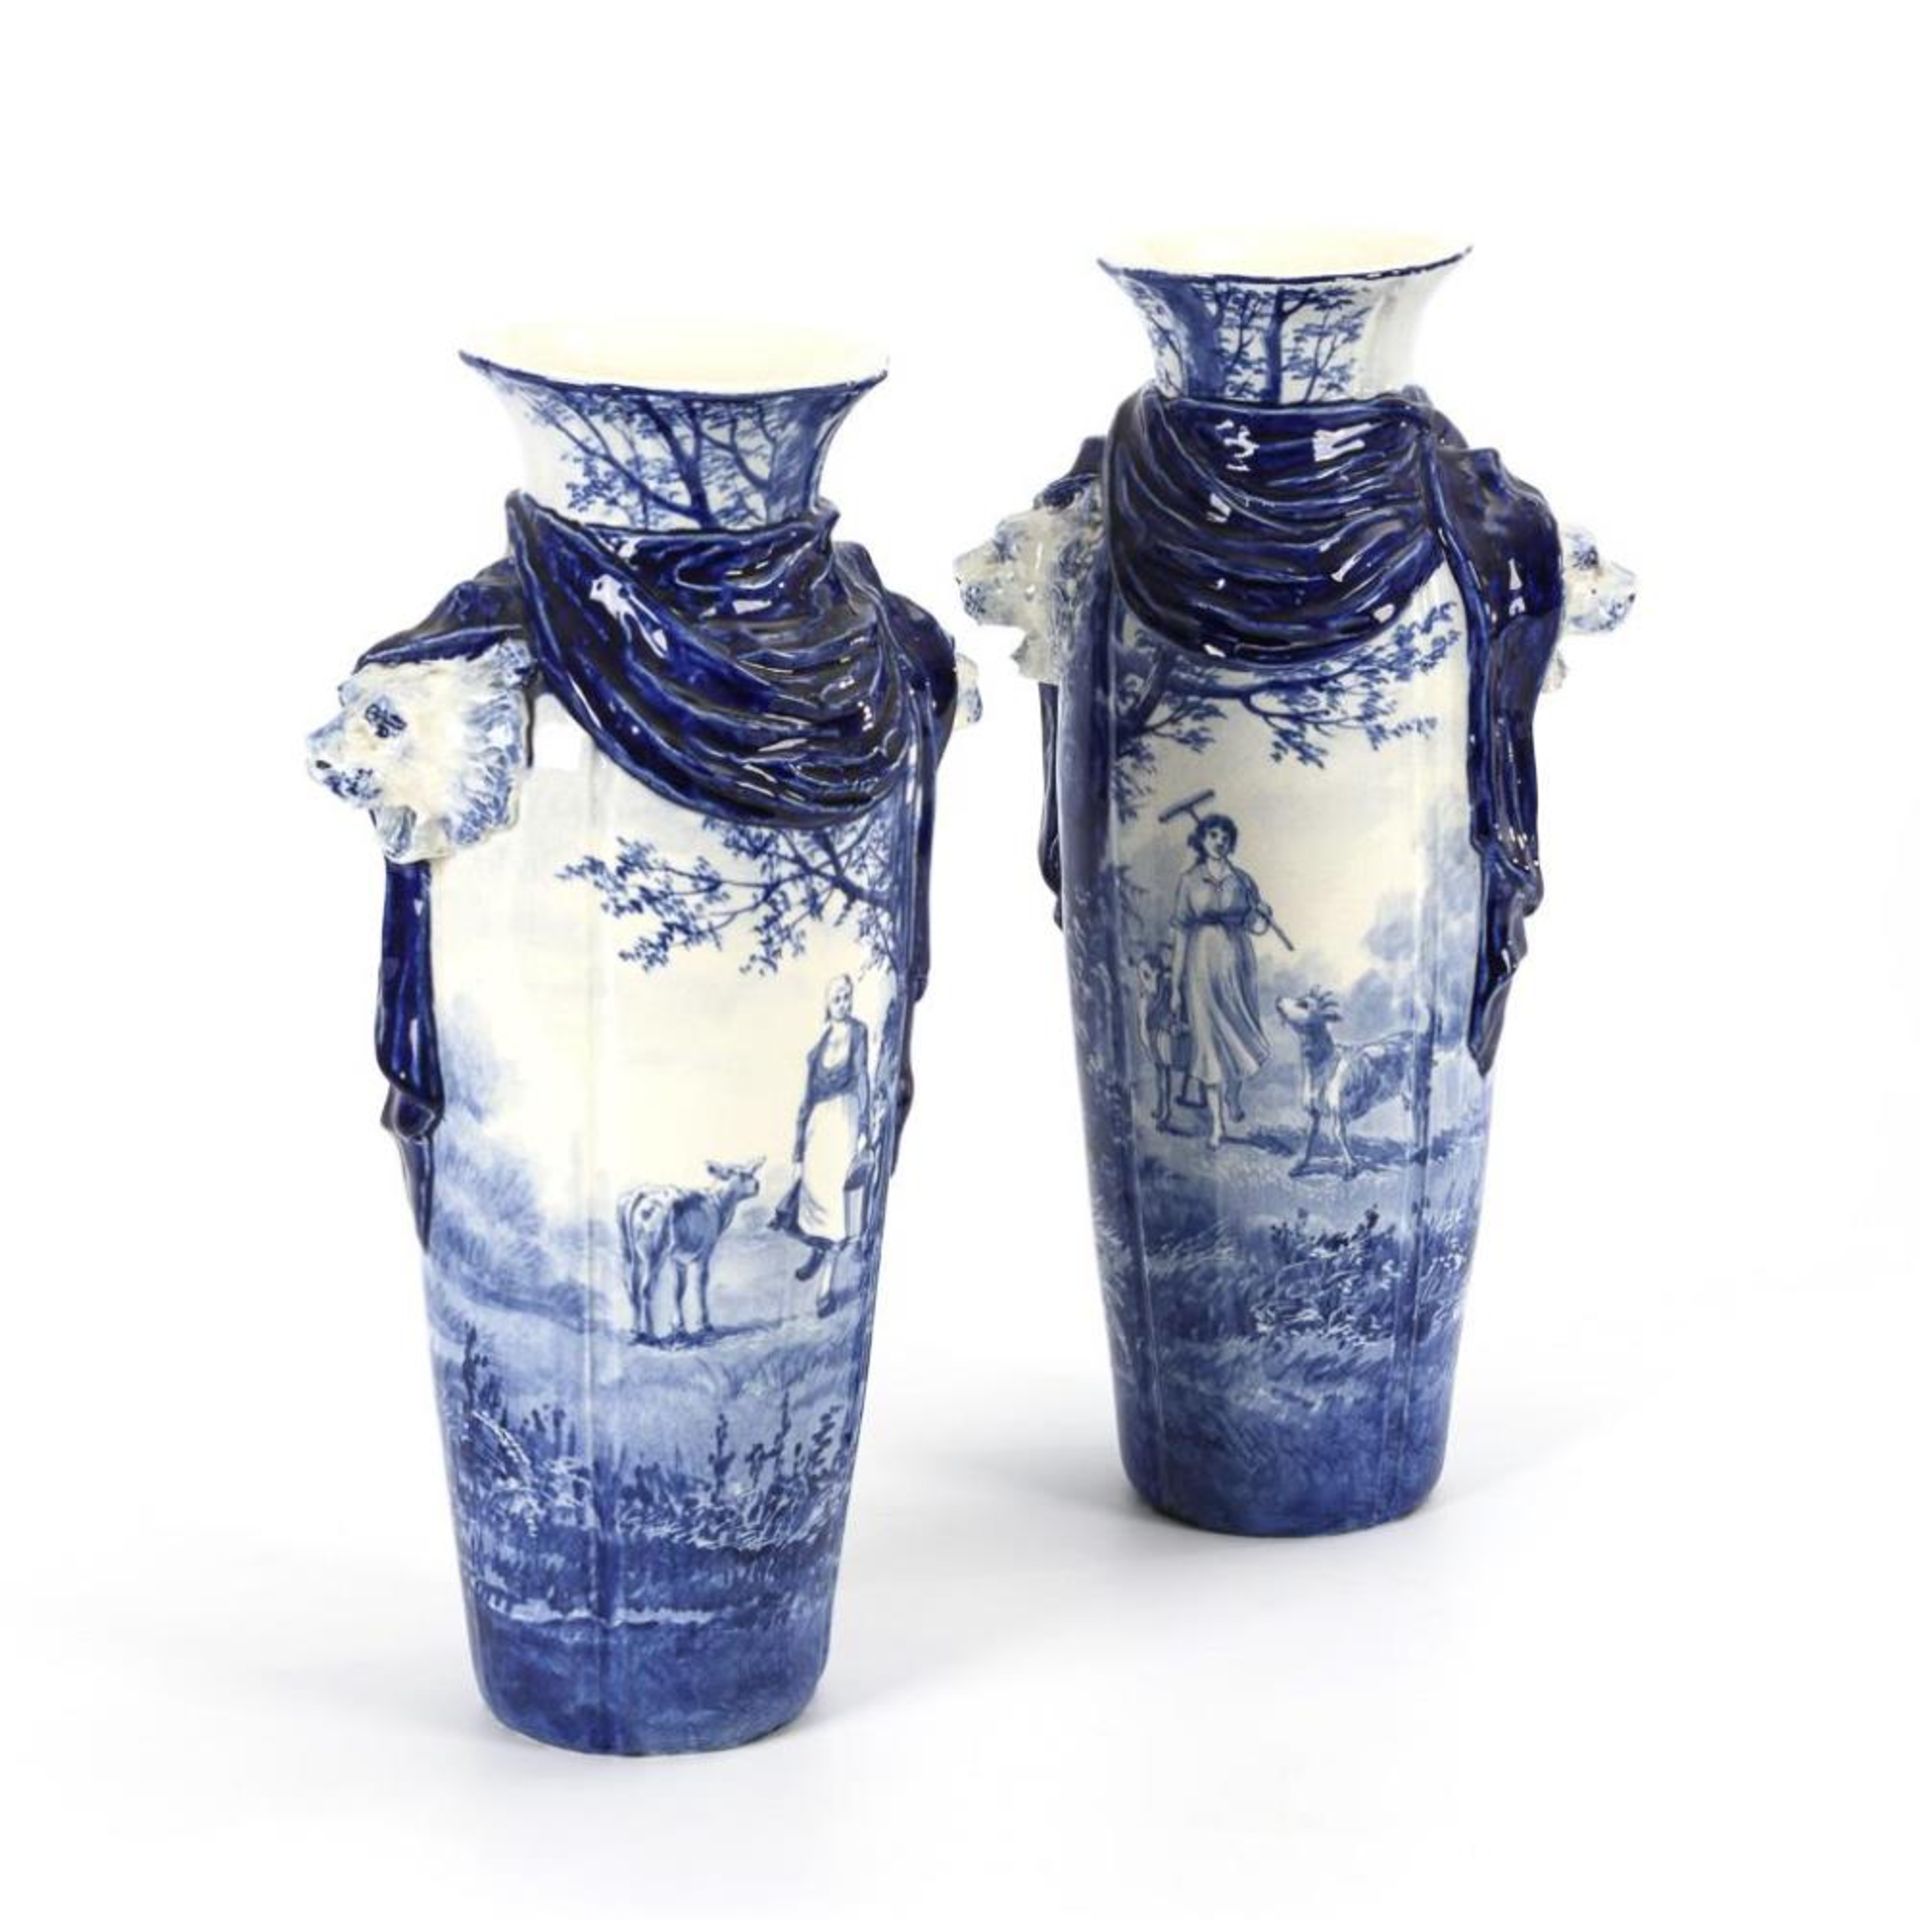 Paar Vasen mit Blaumalerei